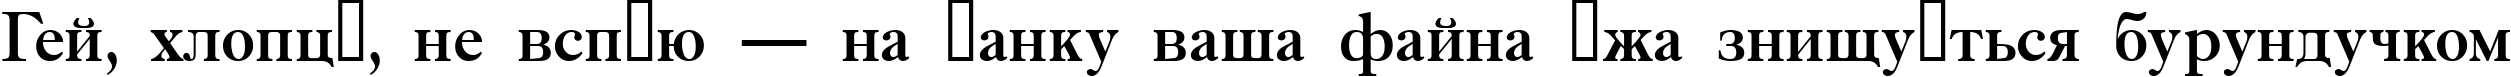 Пример написания шрифтом a_AntiqueTrady текста на украинском